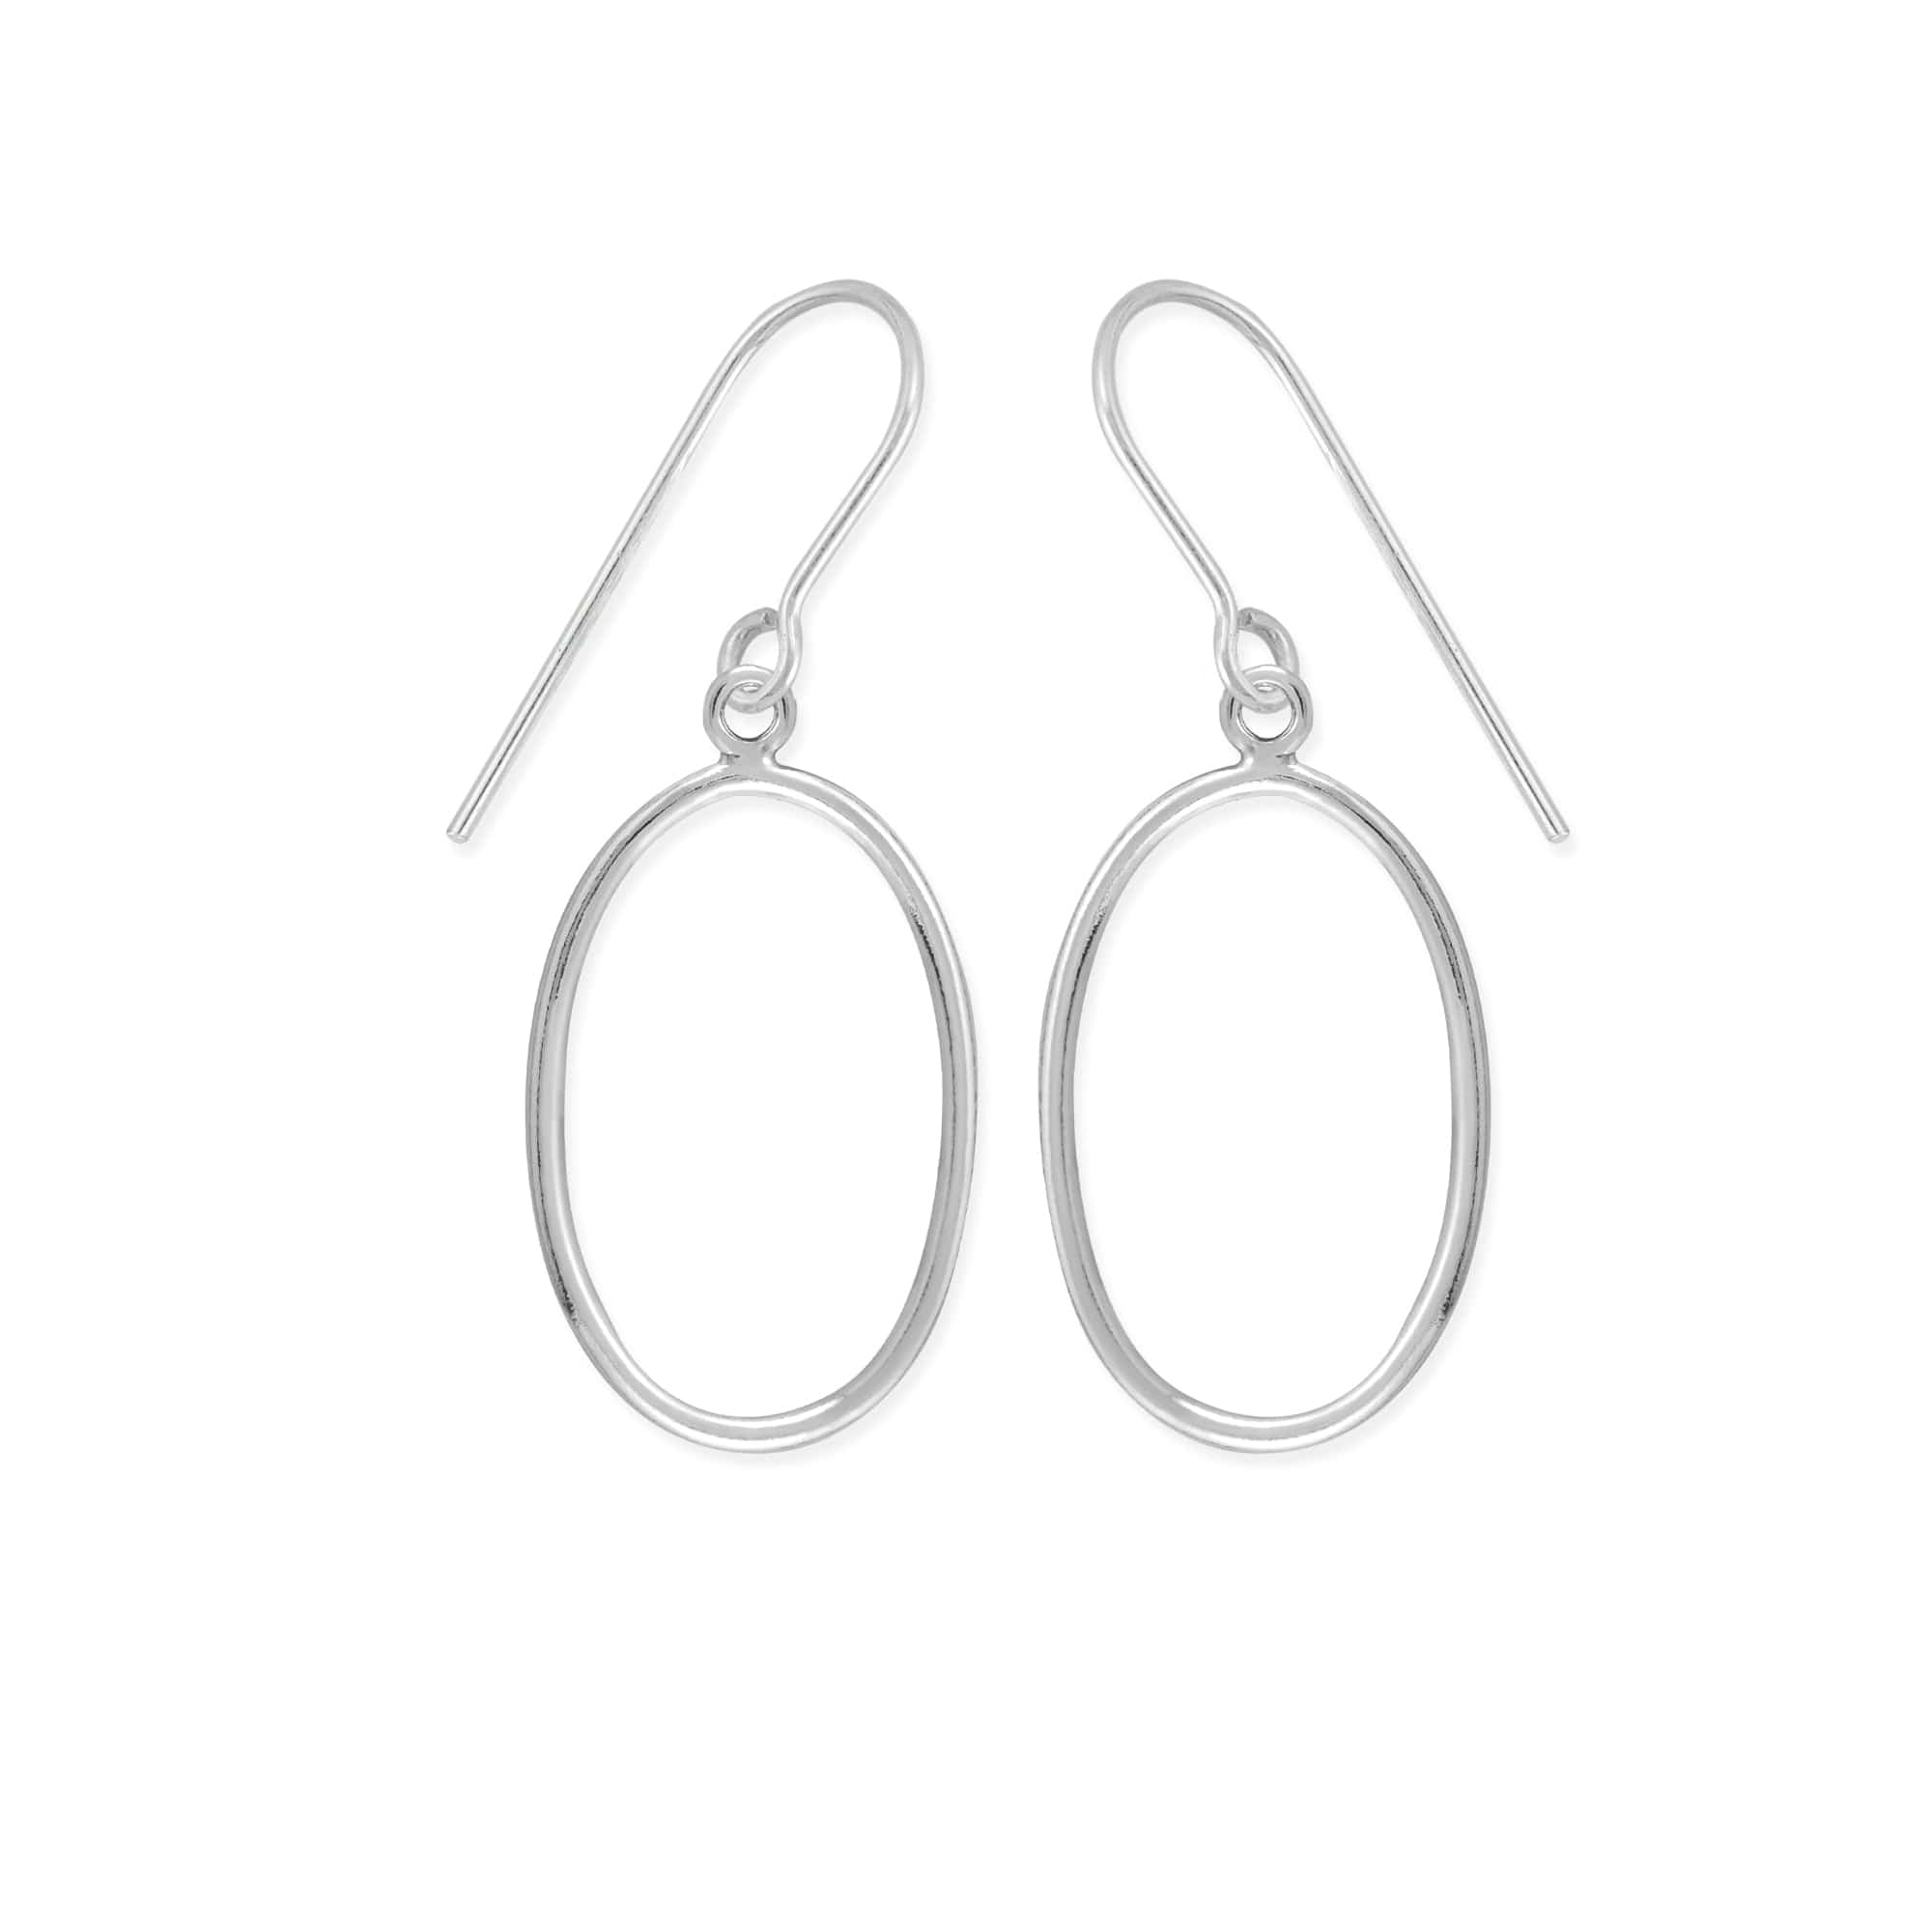 Boma Jewelry Earrings Oval Earrings